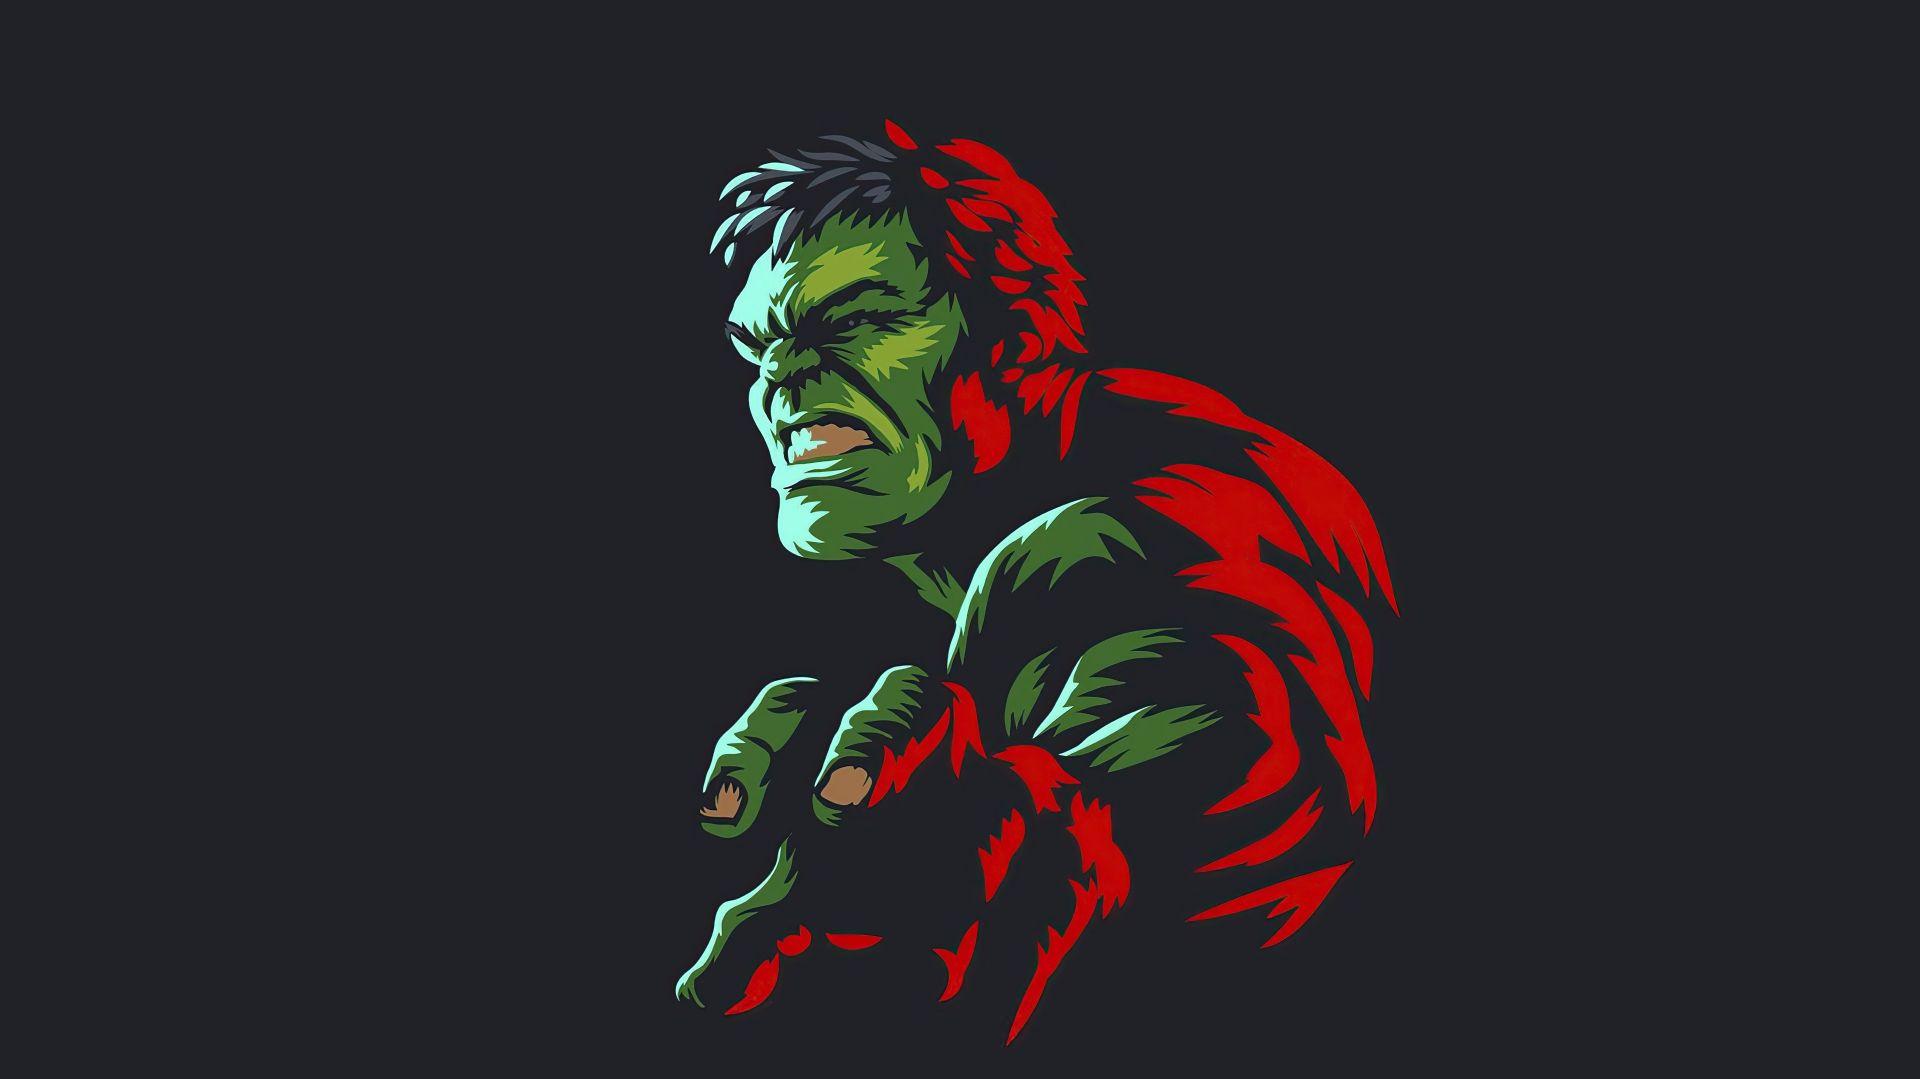 Hulk Marvel Ics Desktop Background Image And Wallpaper Yl